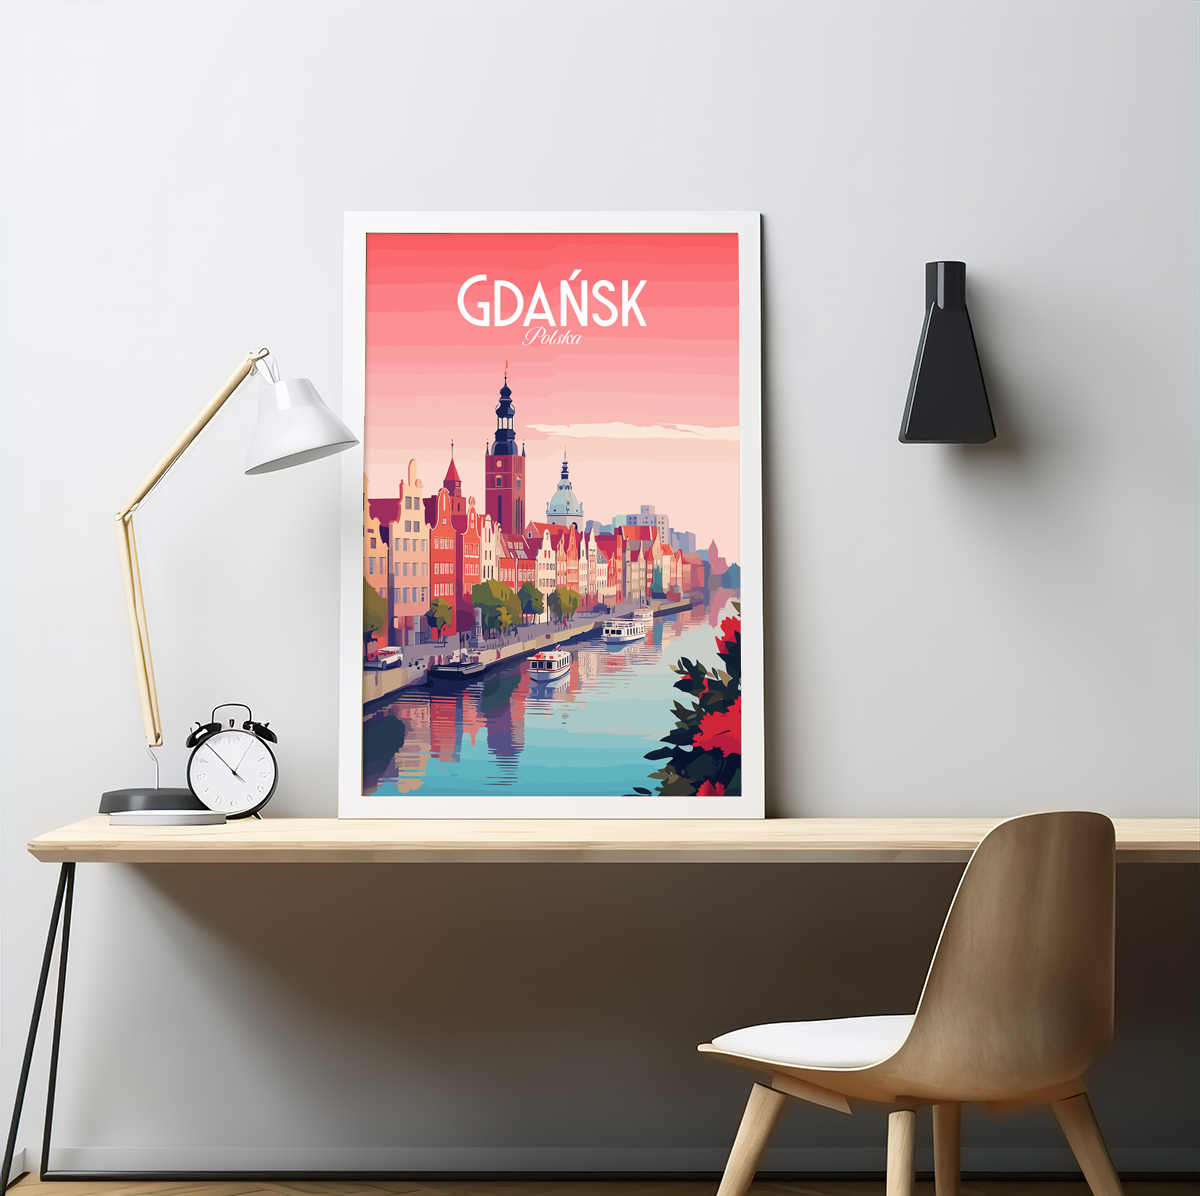 Gdansk poster by bon voyage design